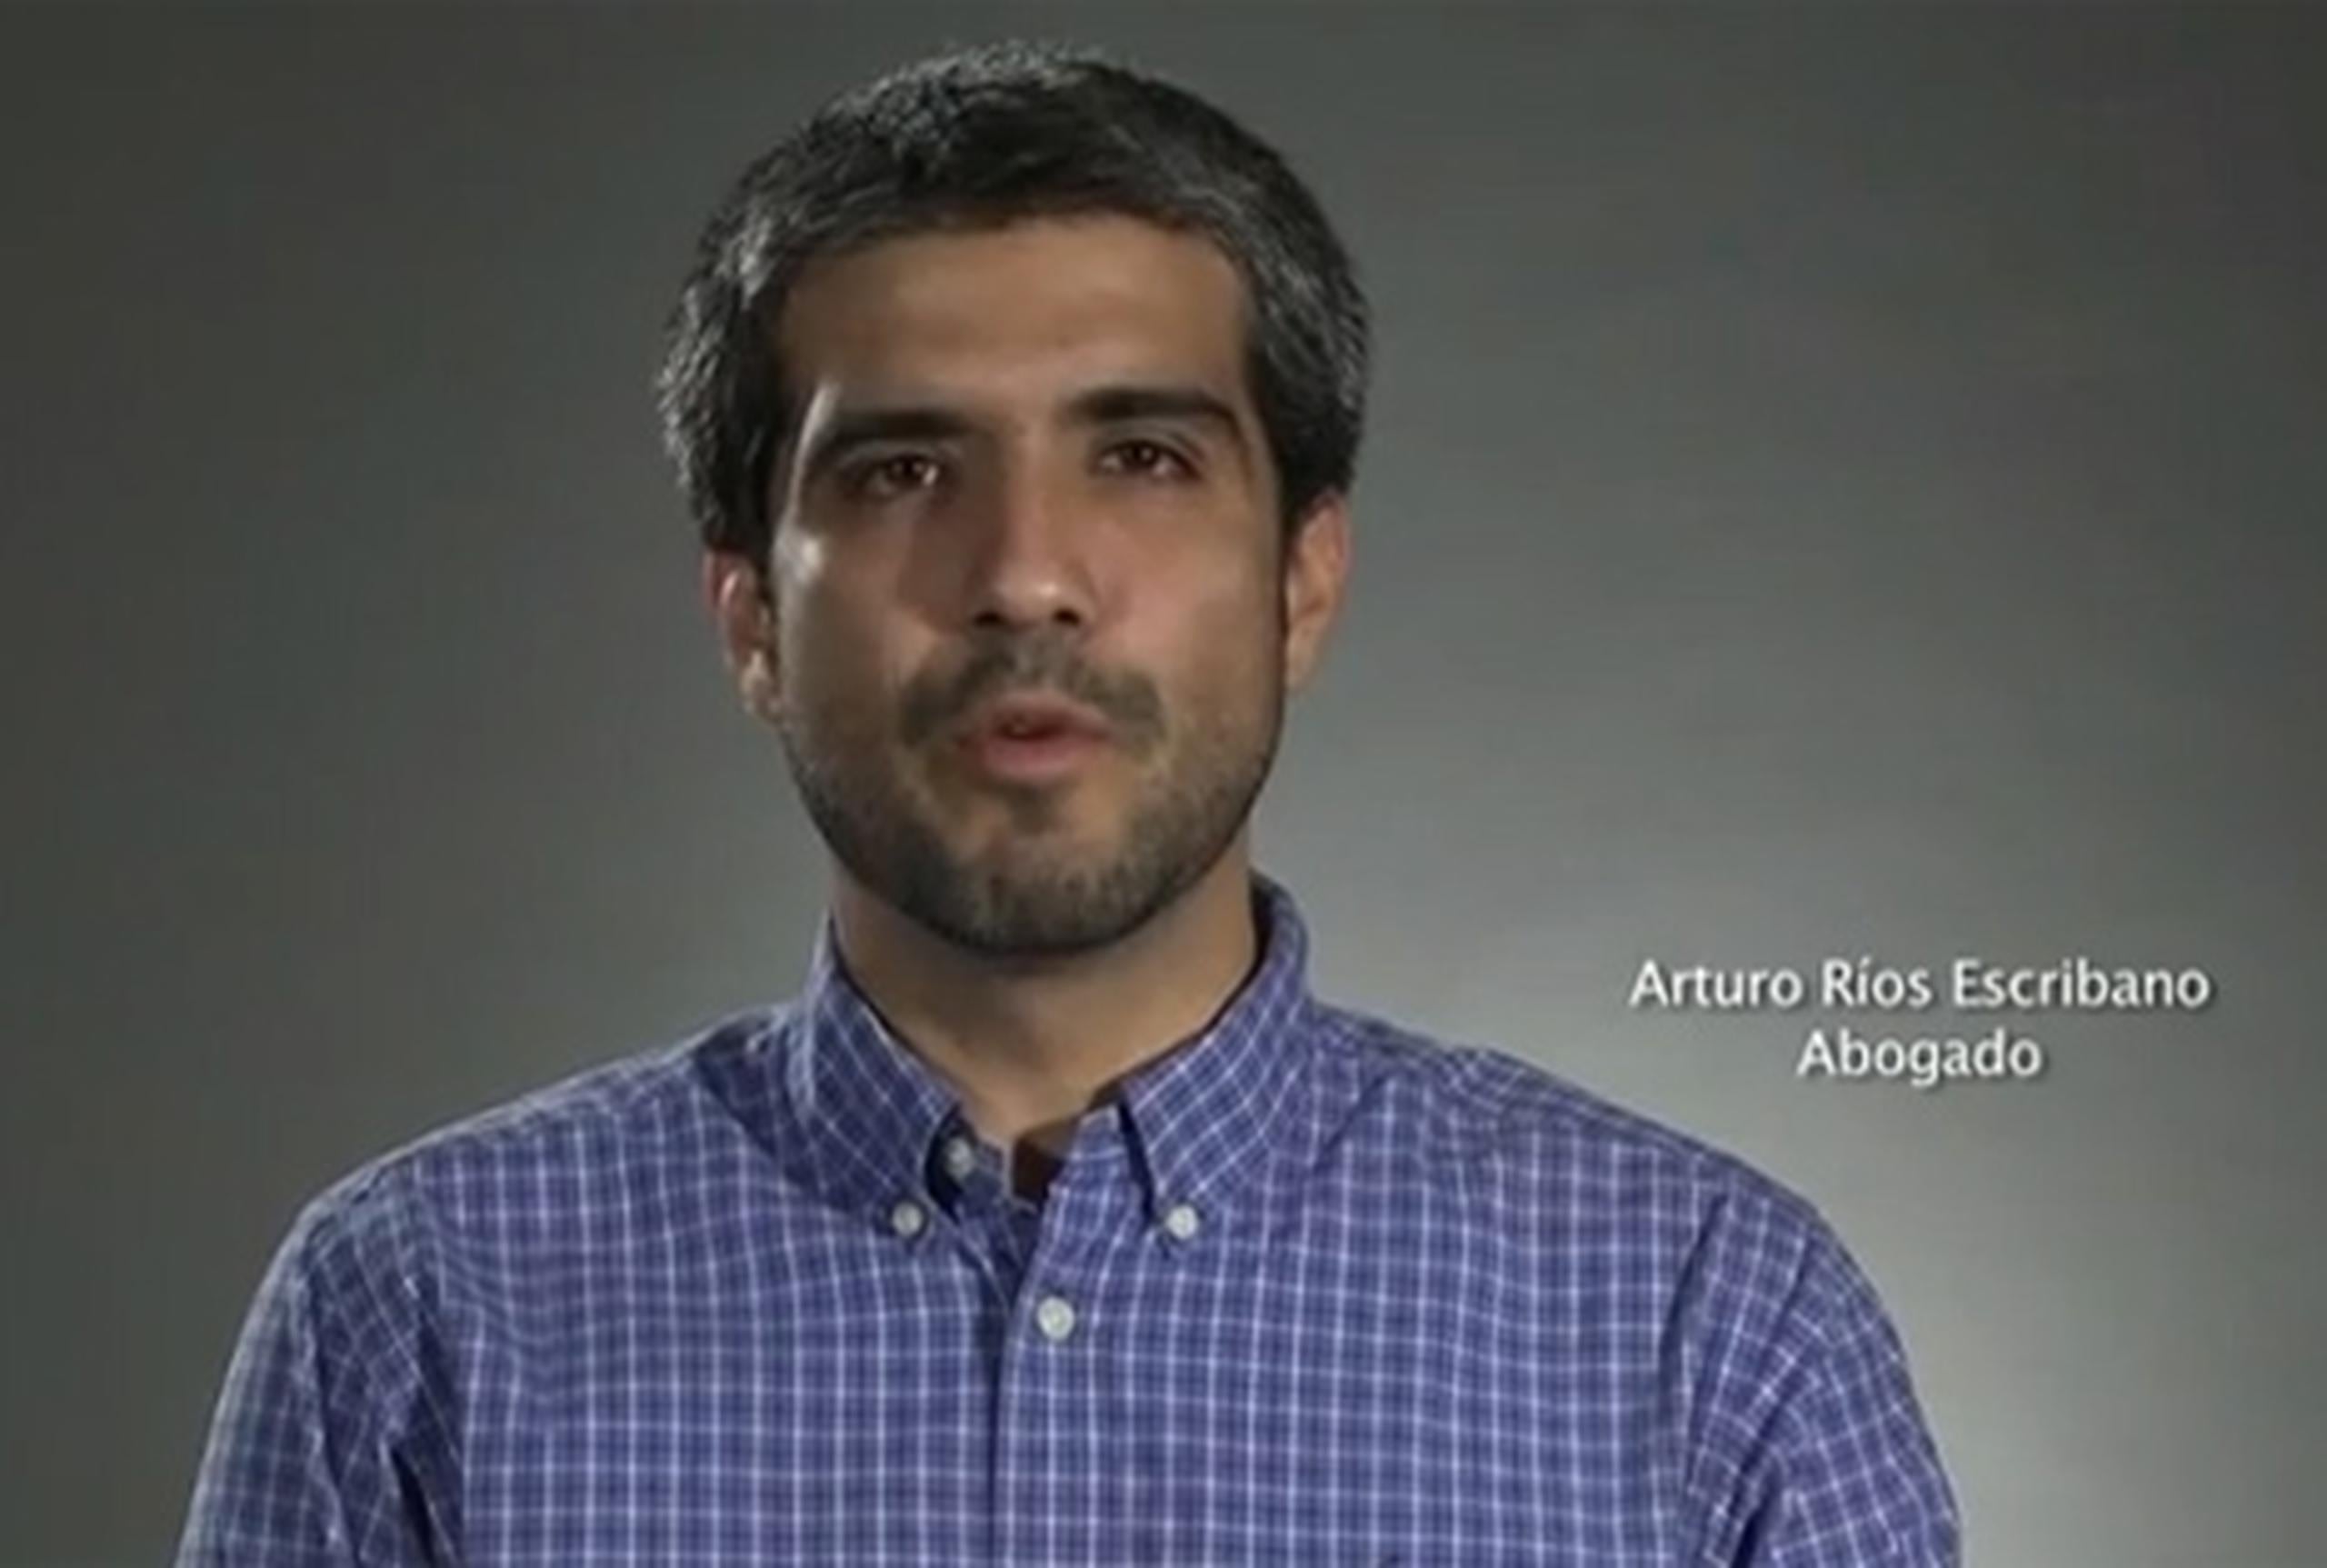 Arturo Ríos Escribano, exlíder estudiantil universitario, participa del vídeo. (YouTube)